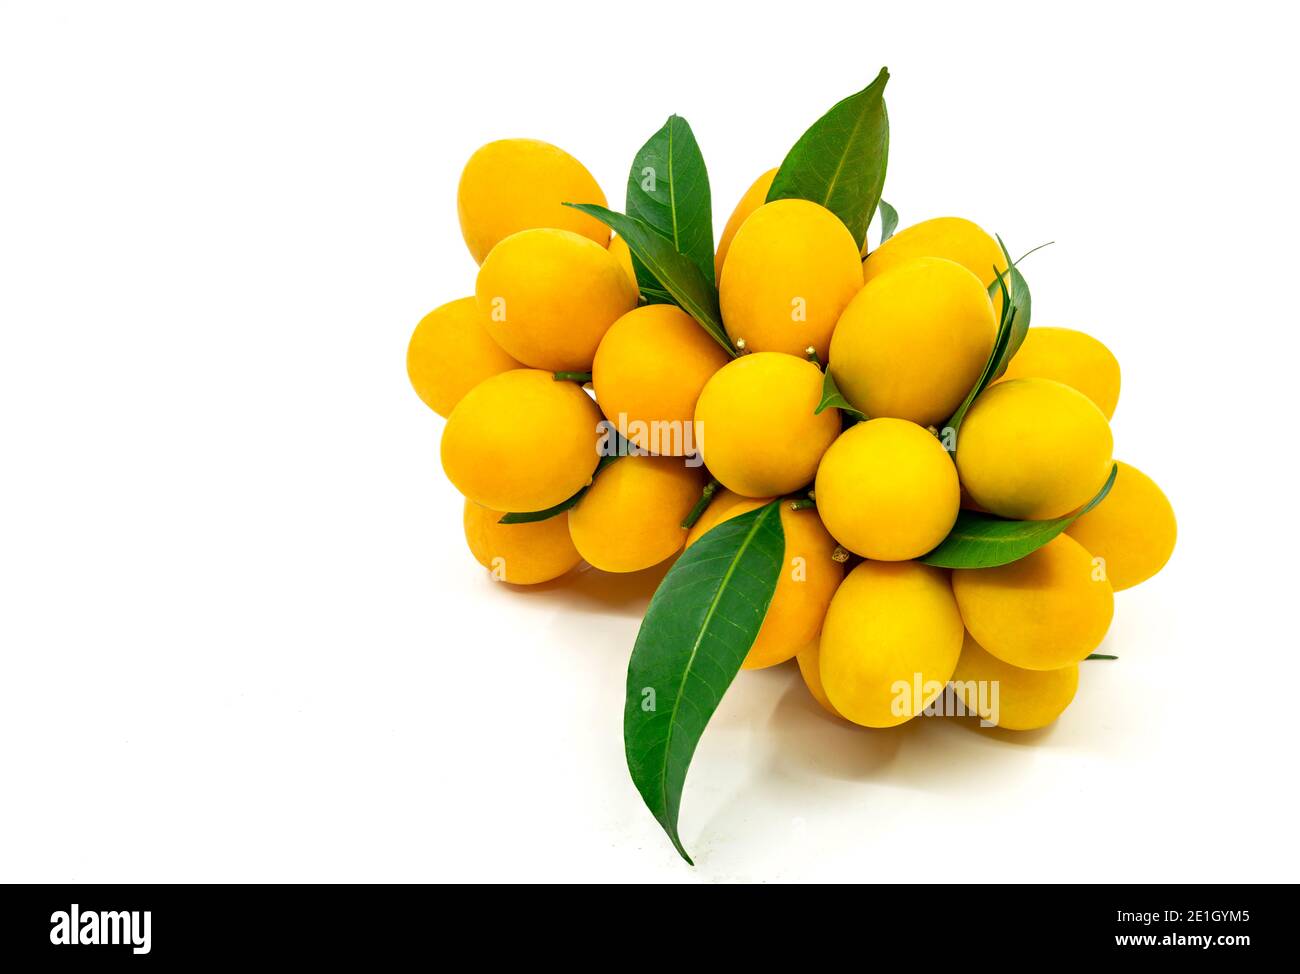 Isolato bel mazzo mariano di prugne o mazzo di prugne di mango su sfondo bianco, frutta tropicale della Thailandia, frutta dolce e agrodolce Asia. Foto Stock